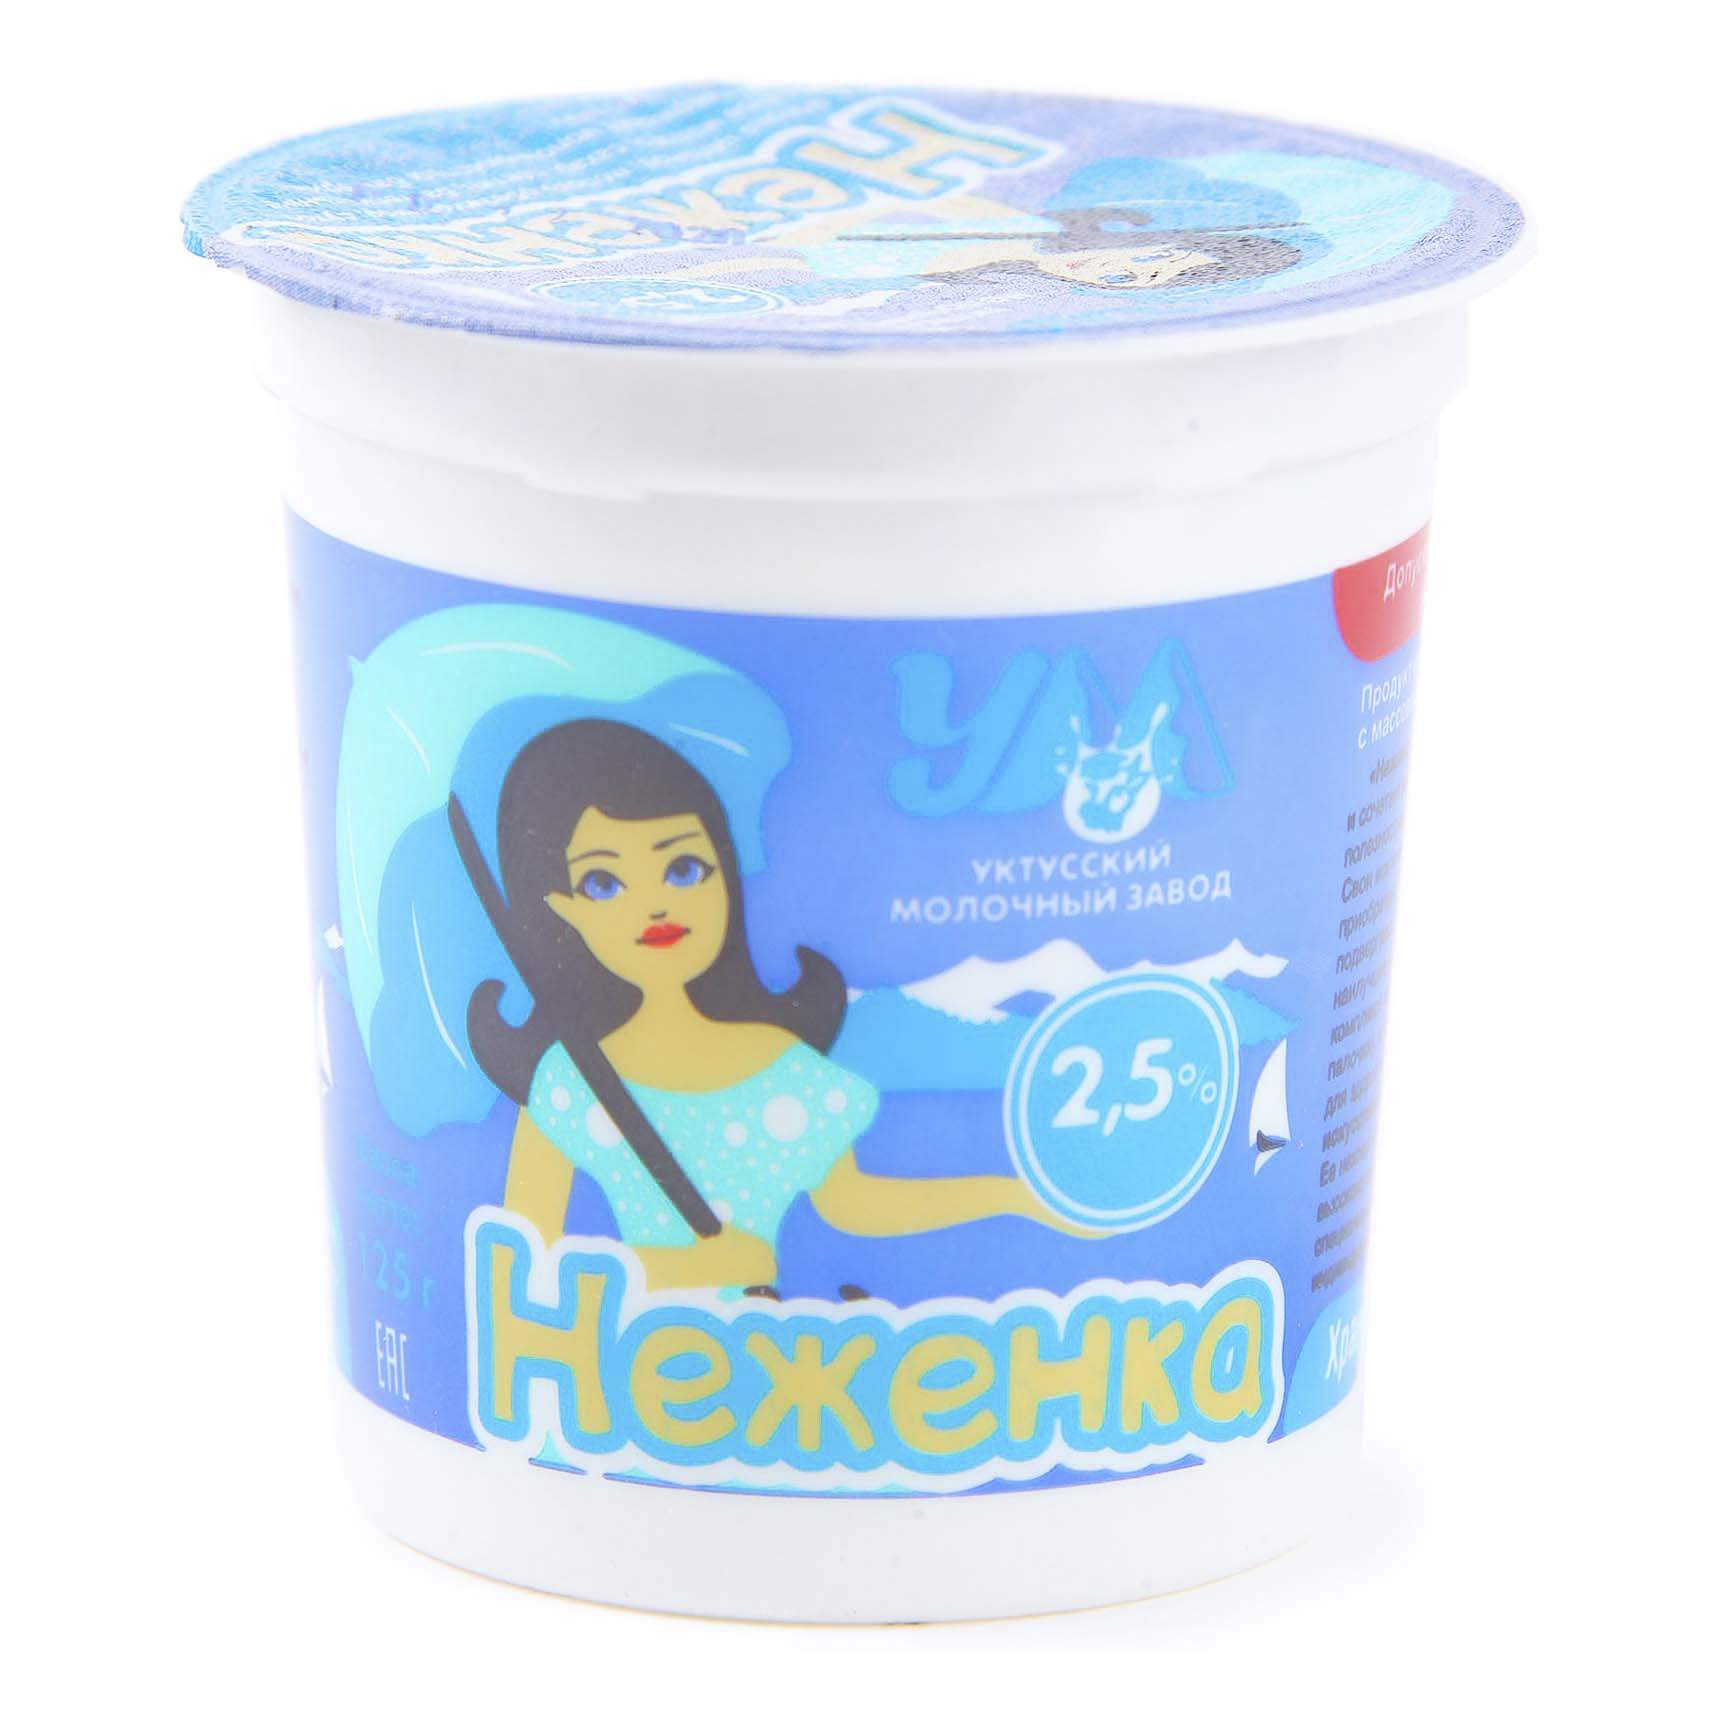 Десерт Уктусский молочный завод Неженка 2,5% бзмж 125 г